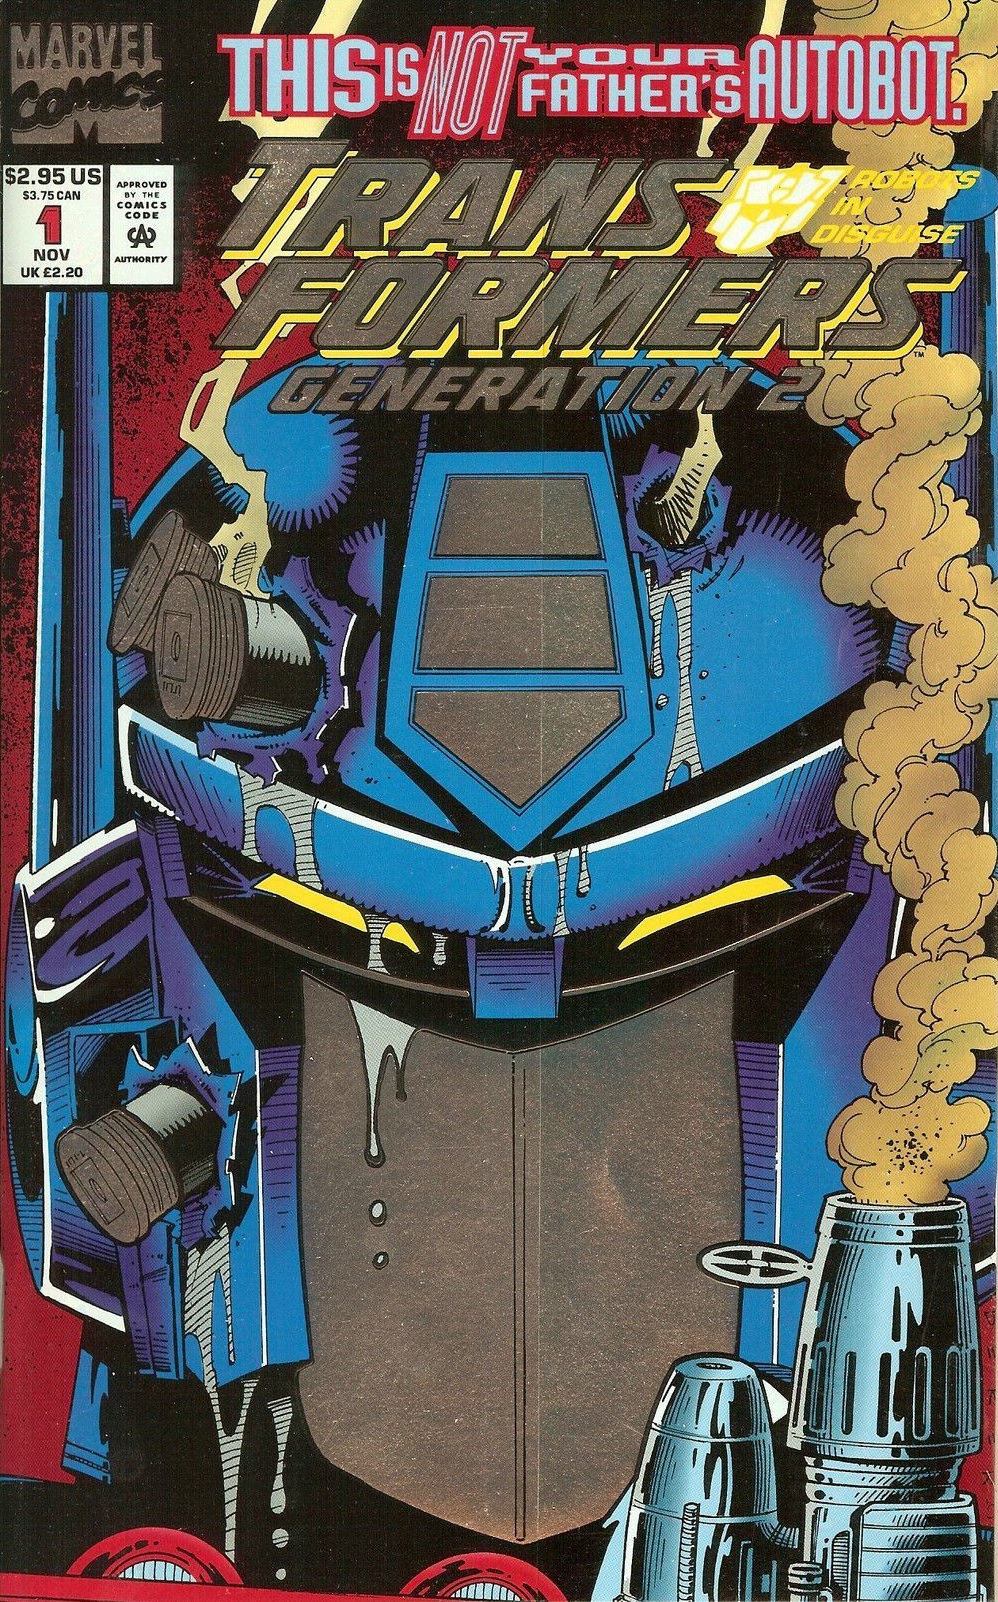 A Verdadeira História dos Transformers – Parte 2 – HQPB: Quadrinhos e  Cultura POP na Paraíba